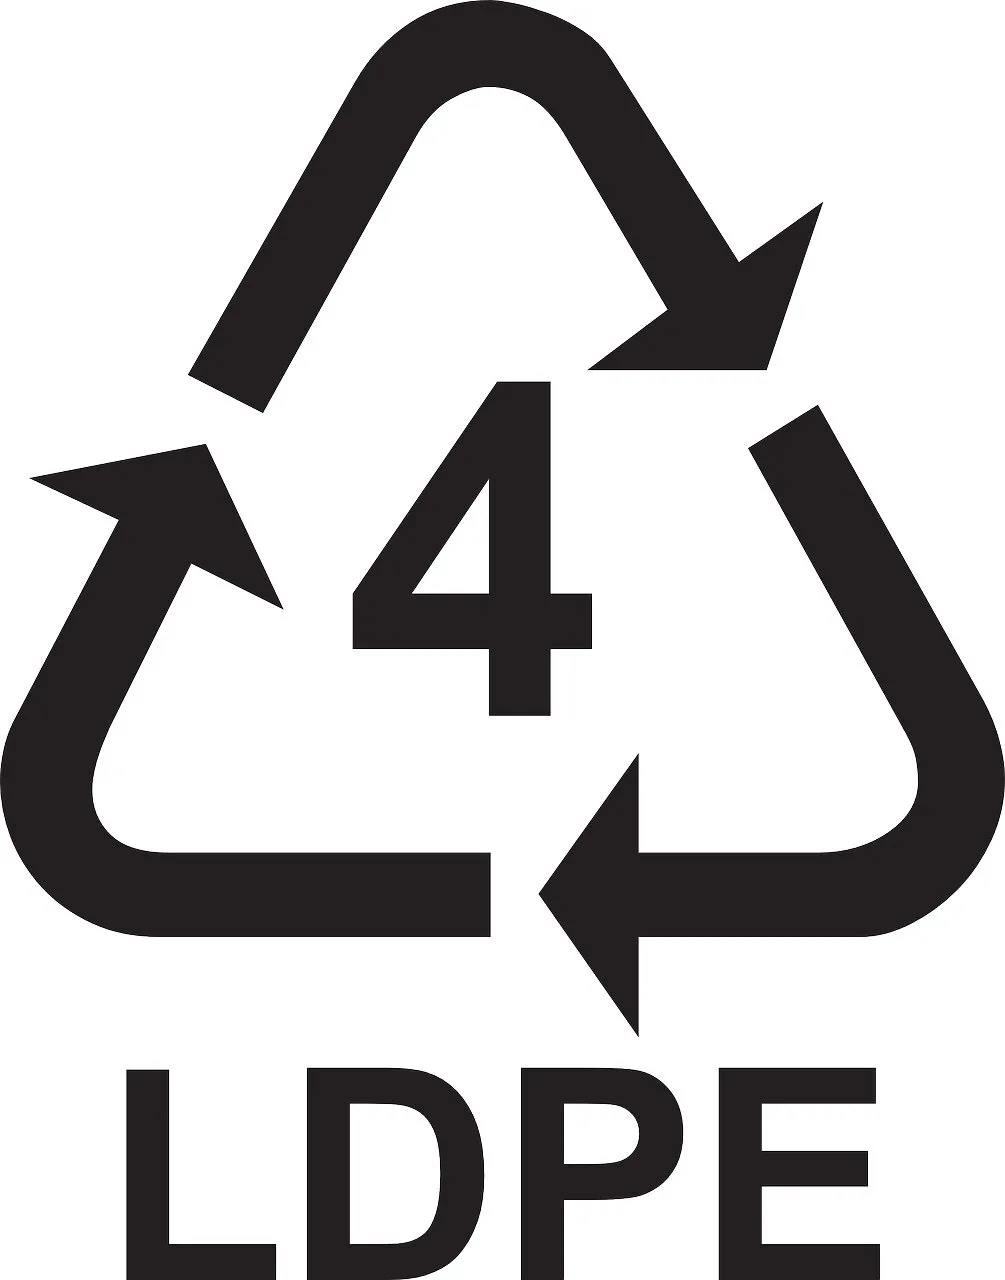 różnice między folią HDPE a LDPE, przeznaczenie, polietylen, zastosowanie, wysokiej gęstości, PE-LD, recykling LDPE